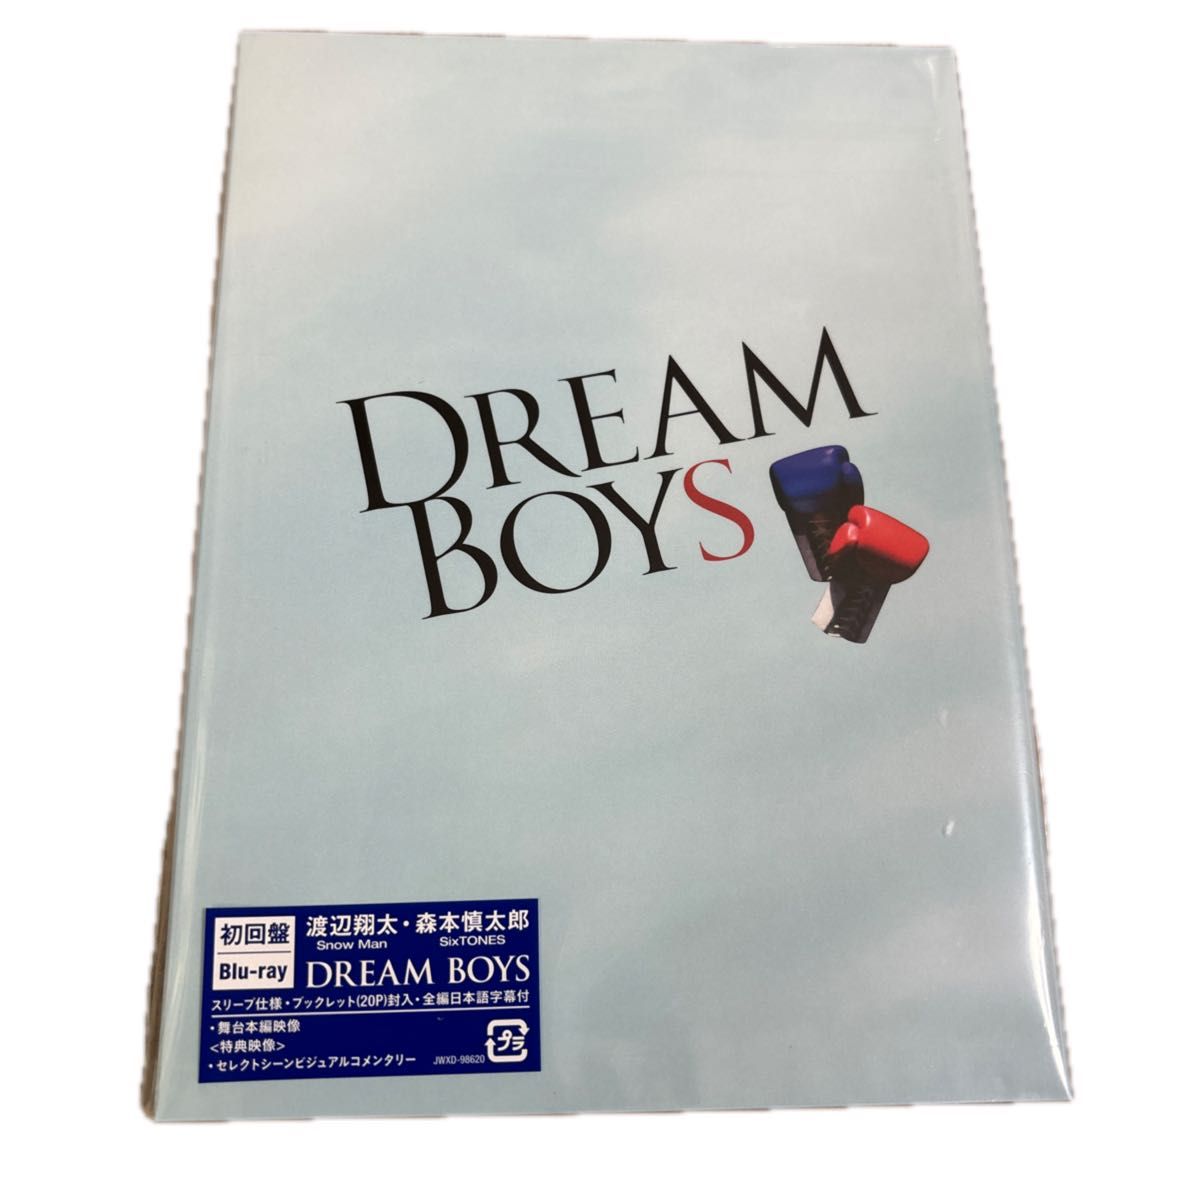 【即日発送】初回Blu-ray 渡辺翔太森本慎太郎 Blu-ray/DREAM BOYS 